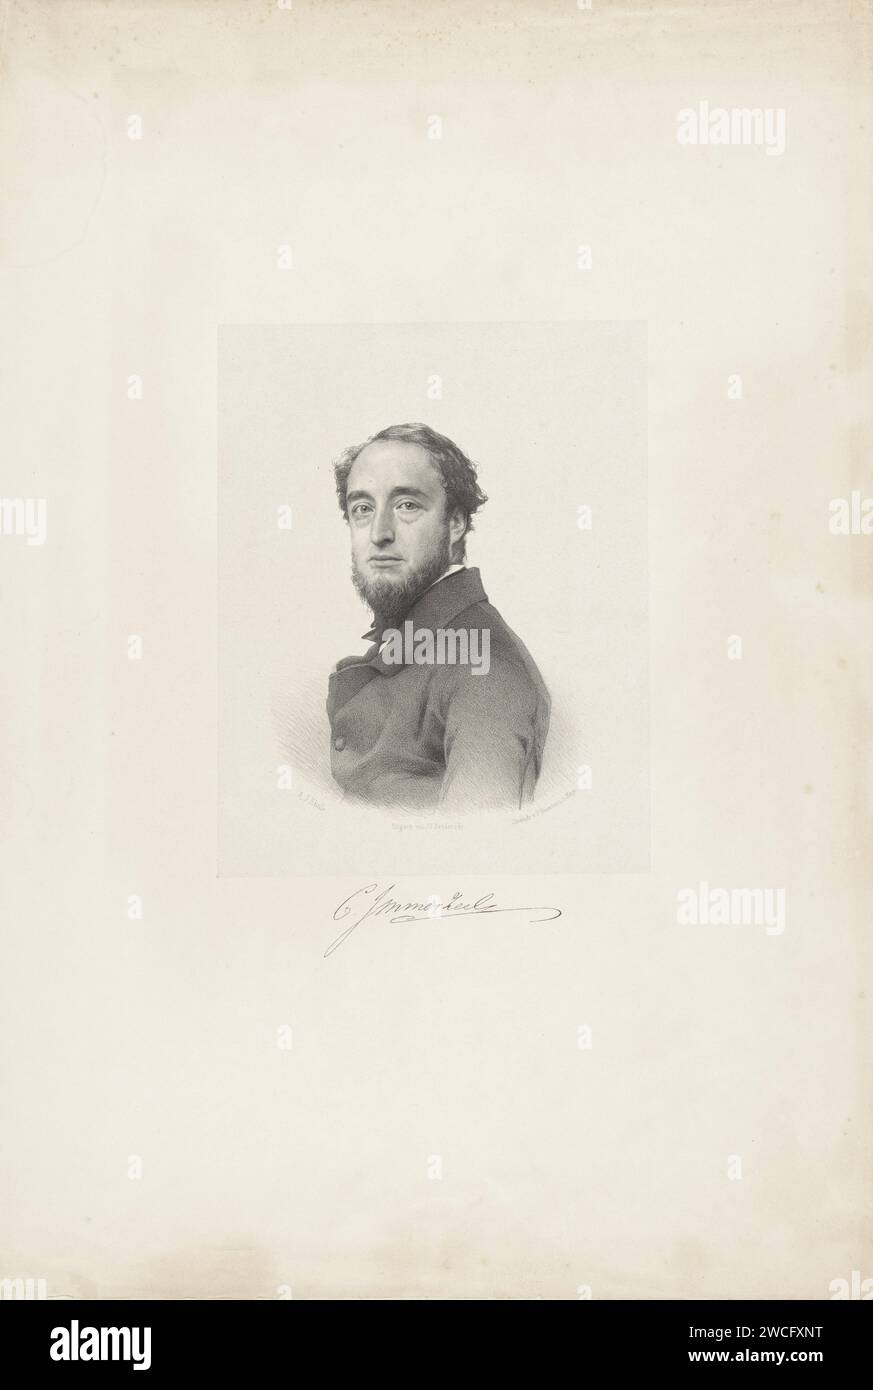 Ritratto di Christiaan Immerzeel, Adrianus Johannes Ehnle, 1847 - 1883 stampa la persona ritratta è usata a sinistra e guarda a destra. Sotto il ritratto c'è la firma. Stampante: L'Harwlisher: Carta Haarletm. persone storiche (+ (ritratto completo) del busto) Foto Stock